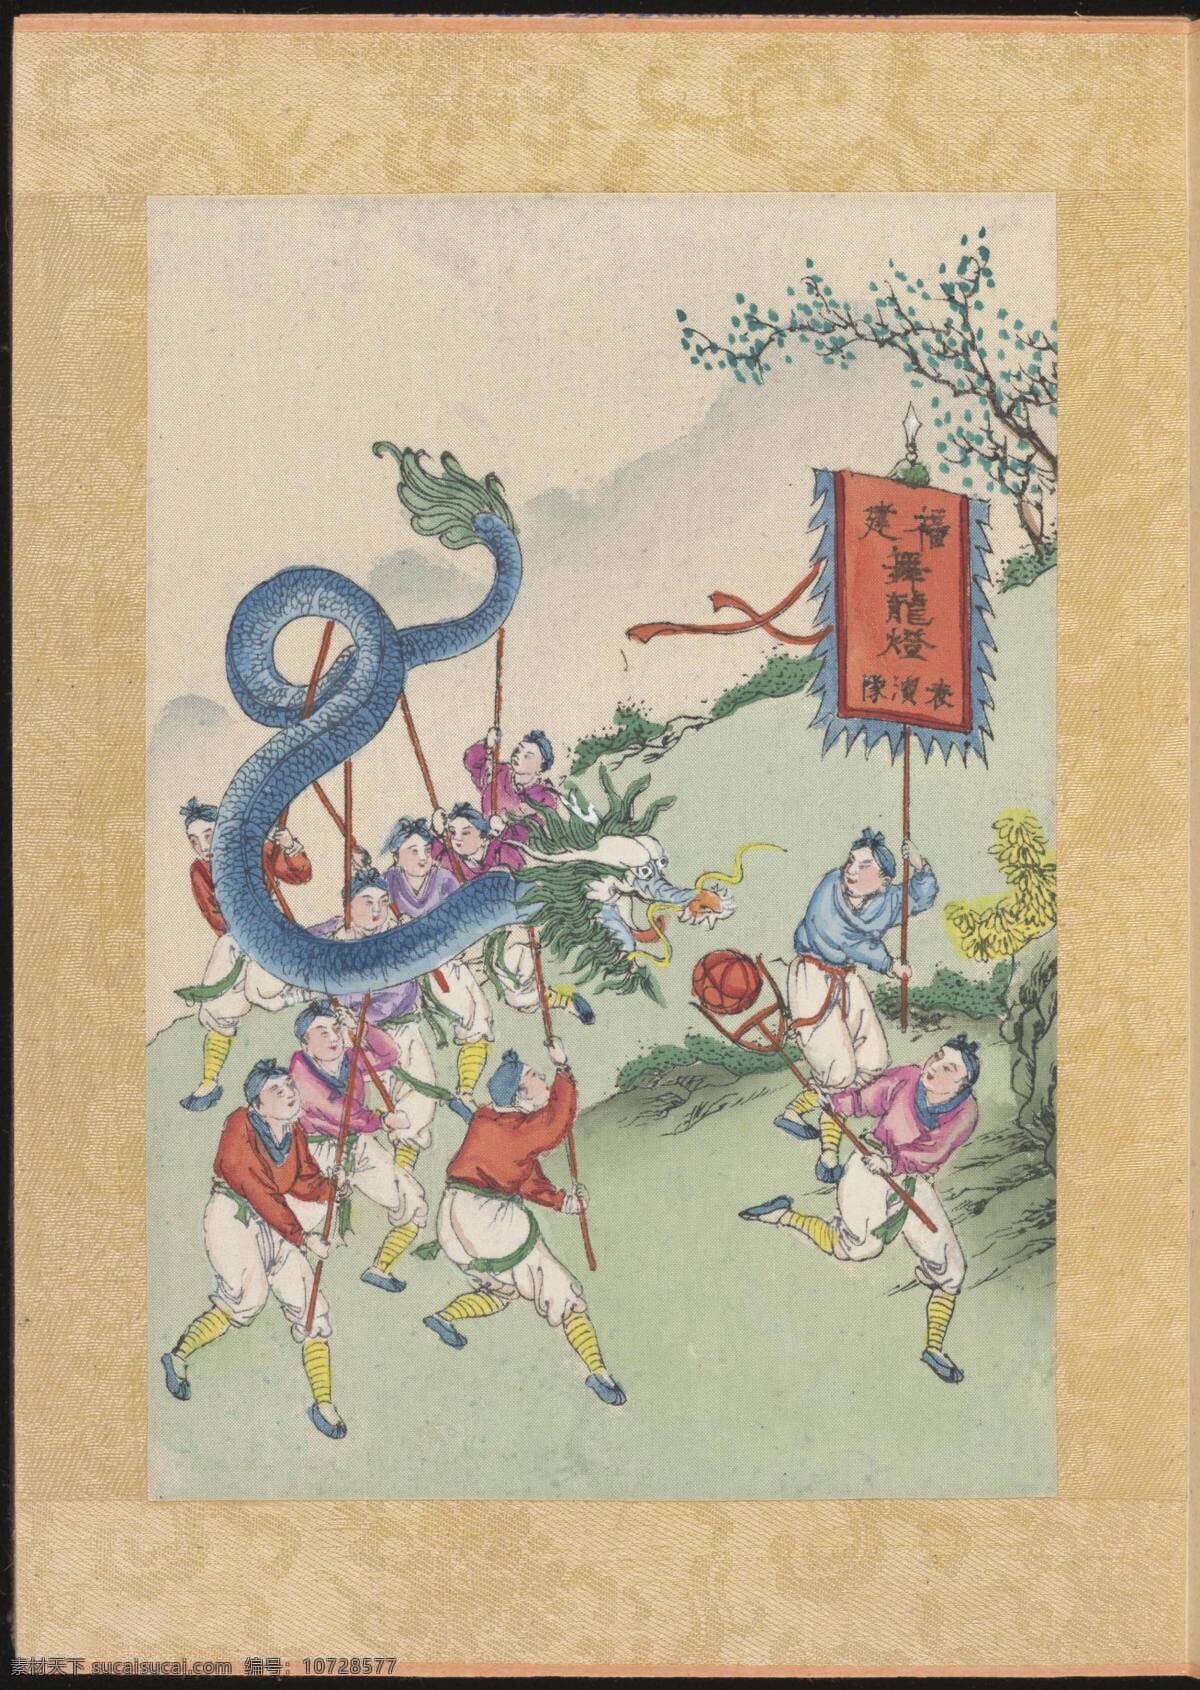 年节习俗 中国风格 传统文化 节日 风俗 民粹 绘画 彩色画 舞龙 龙 人物画 传统绘画 中国风格素材 文化艺术 绘画书法